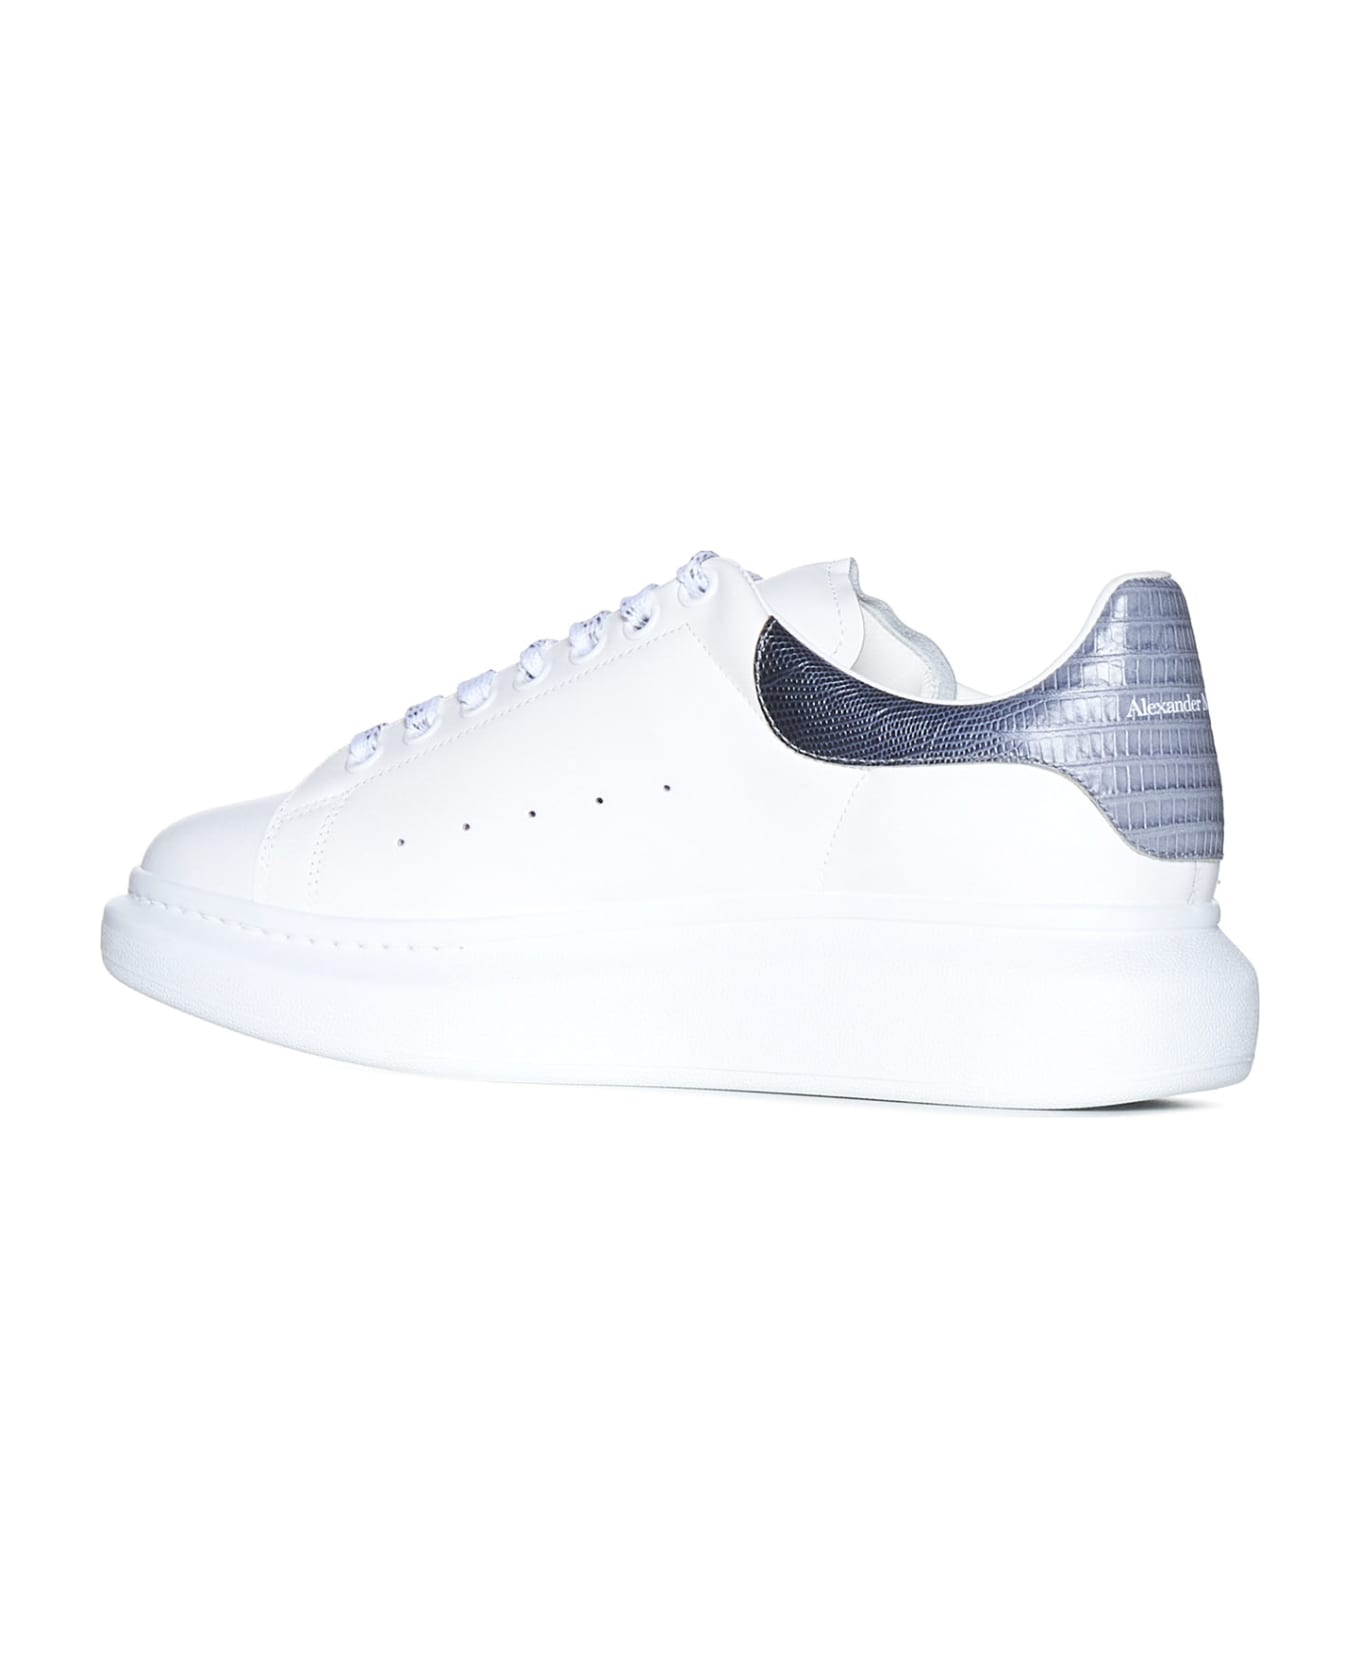 Alexander McQueen Sneakers - White grey